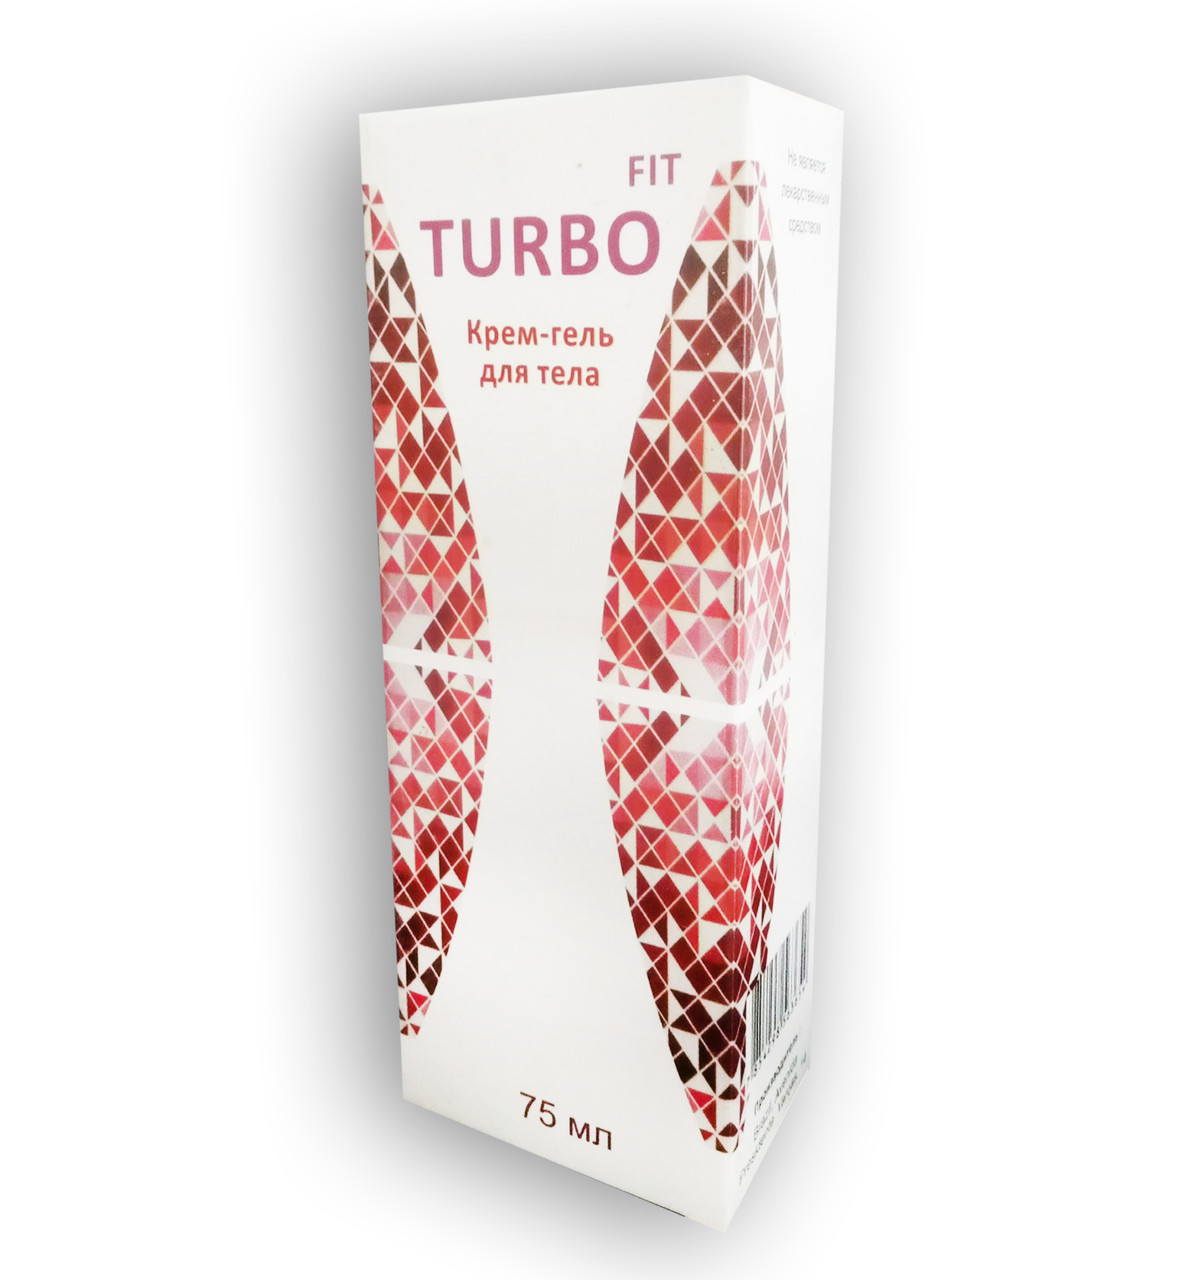 Тurbo Fit — Крем-гель жироспалювальний для тіла (ТурбоФіт)